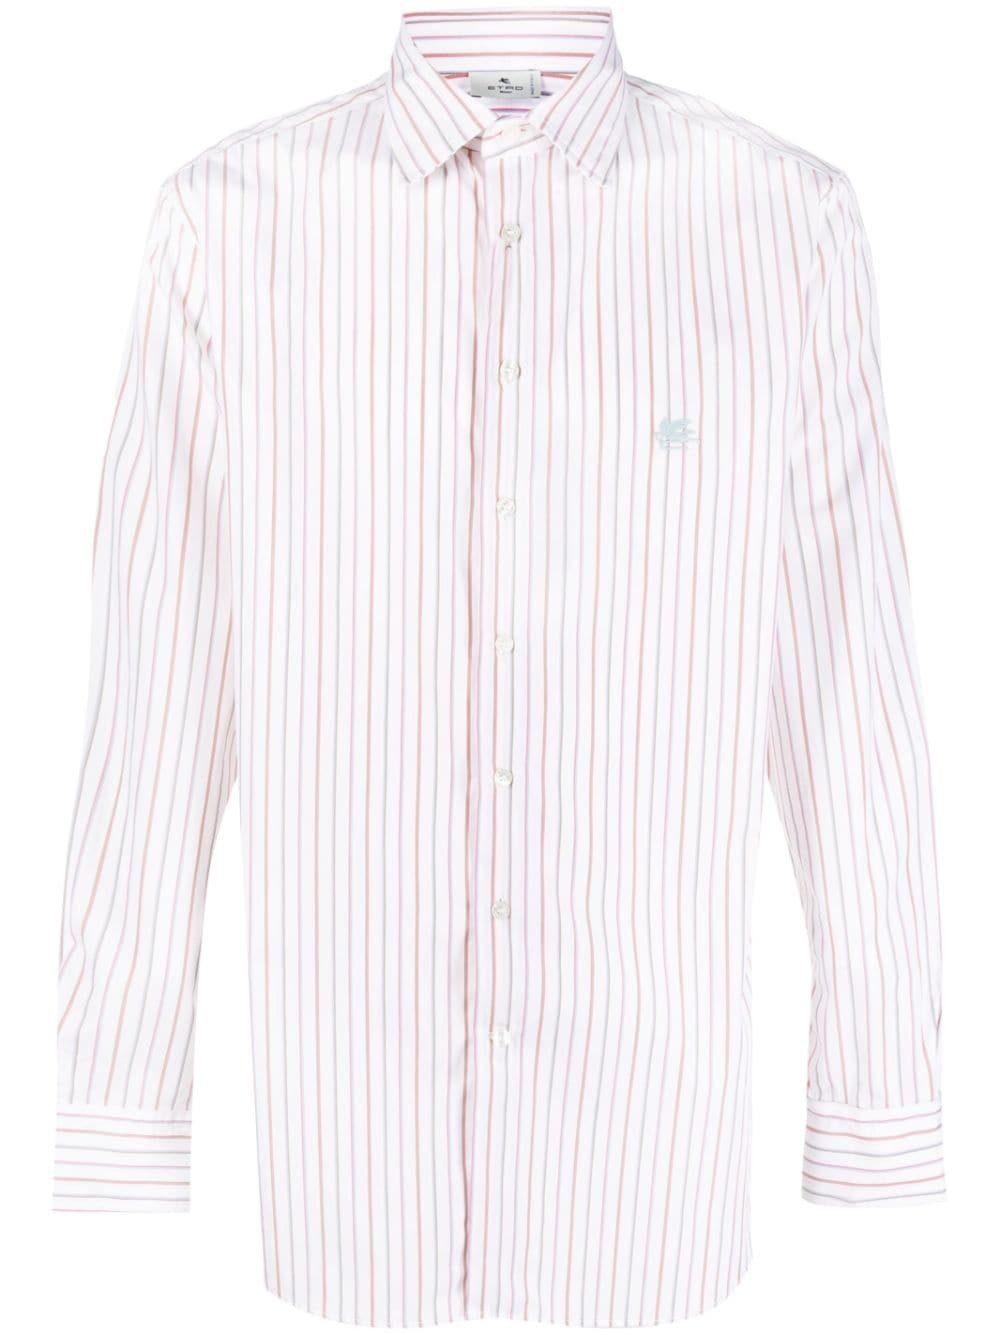 ETRO - Striped Cotton Shirt Etro